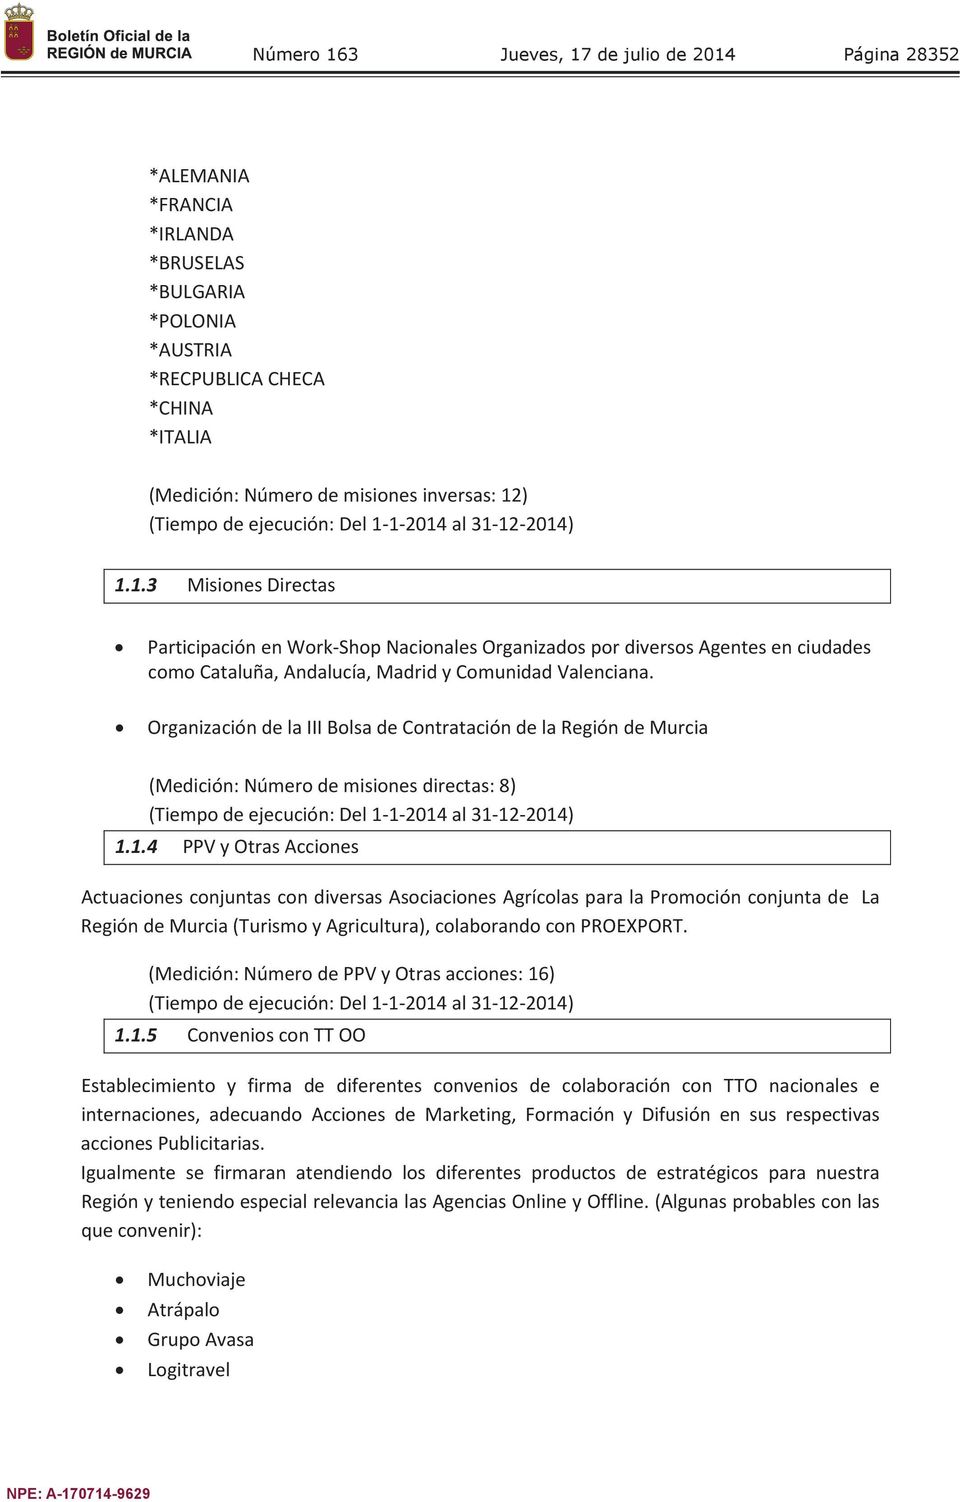 Organización de la III Bolsa de Contratación de la Región de Murcia (Medición: Número de misiones directas: 8) 1.